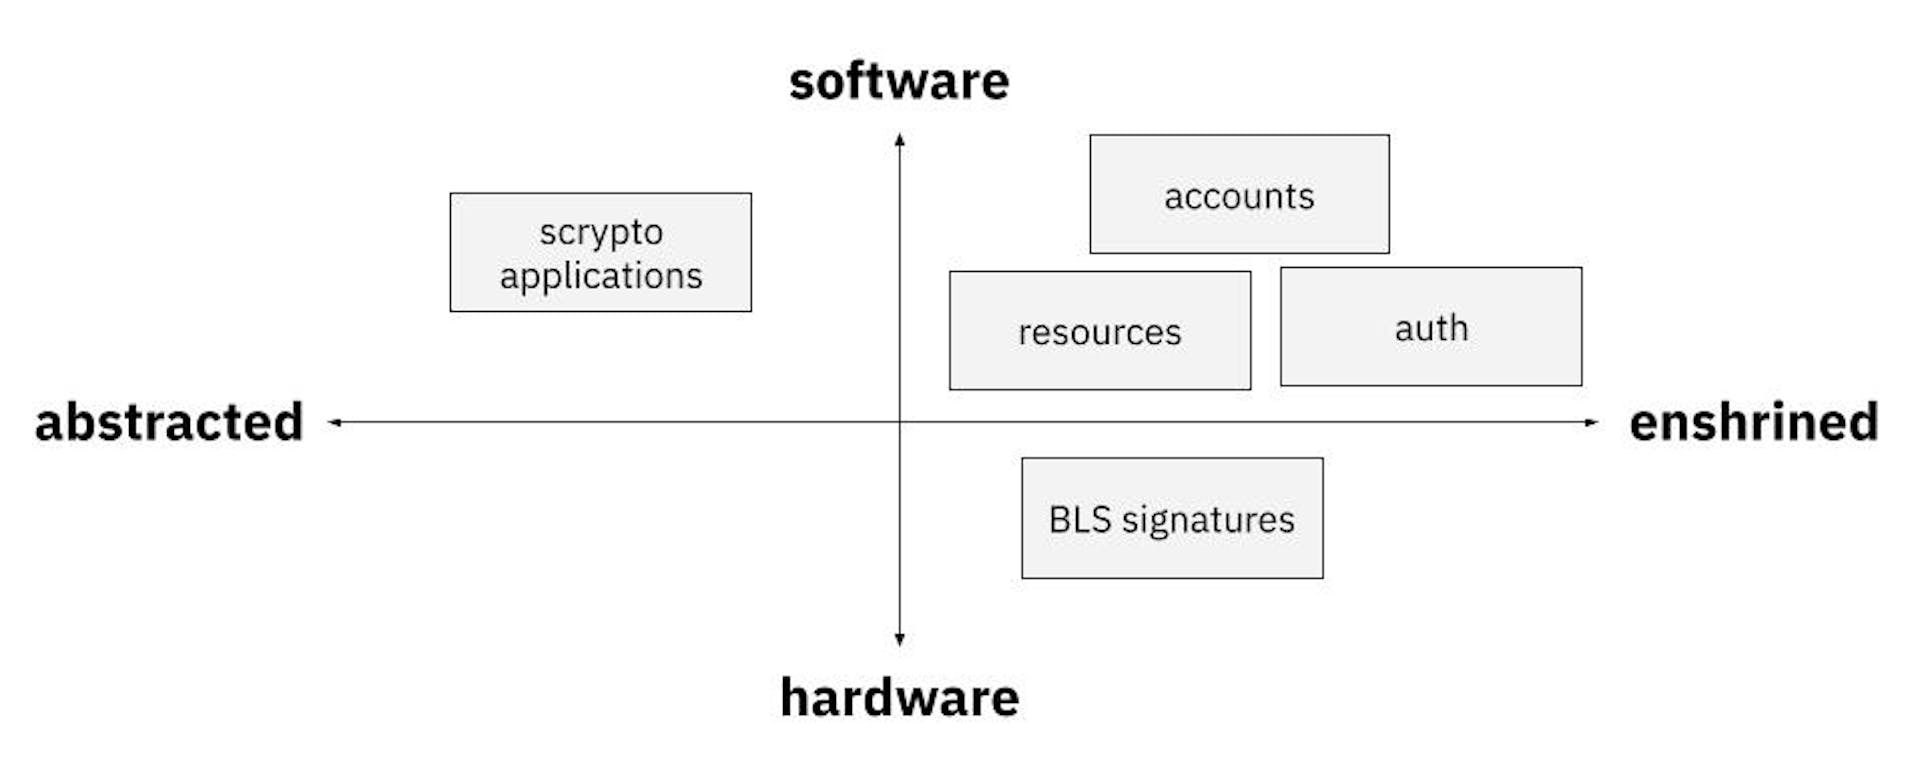 Desacoplamiento de abstracción/consagración versus software/hardware